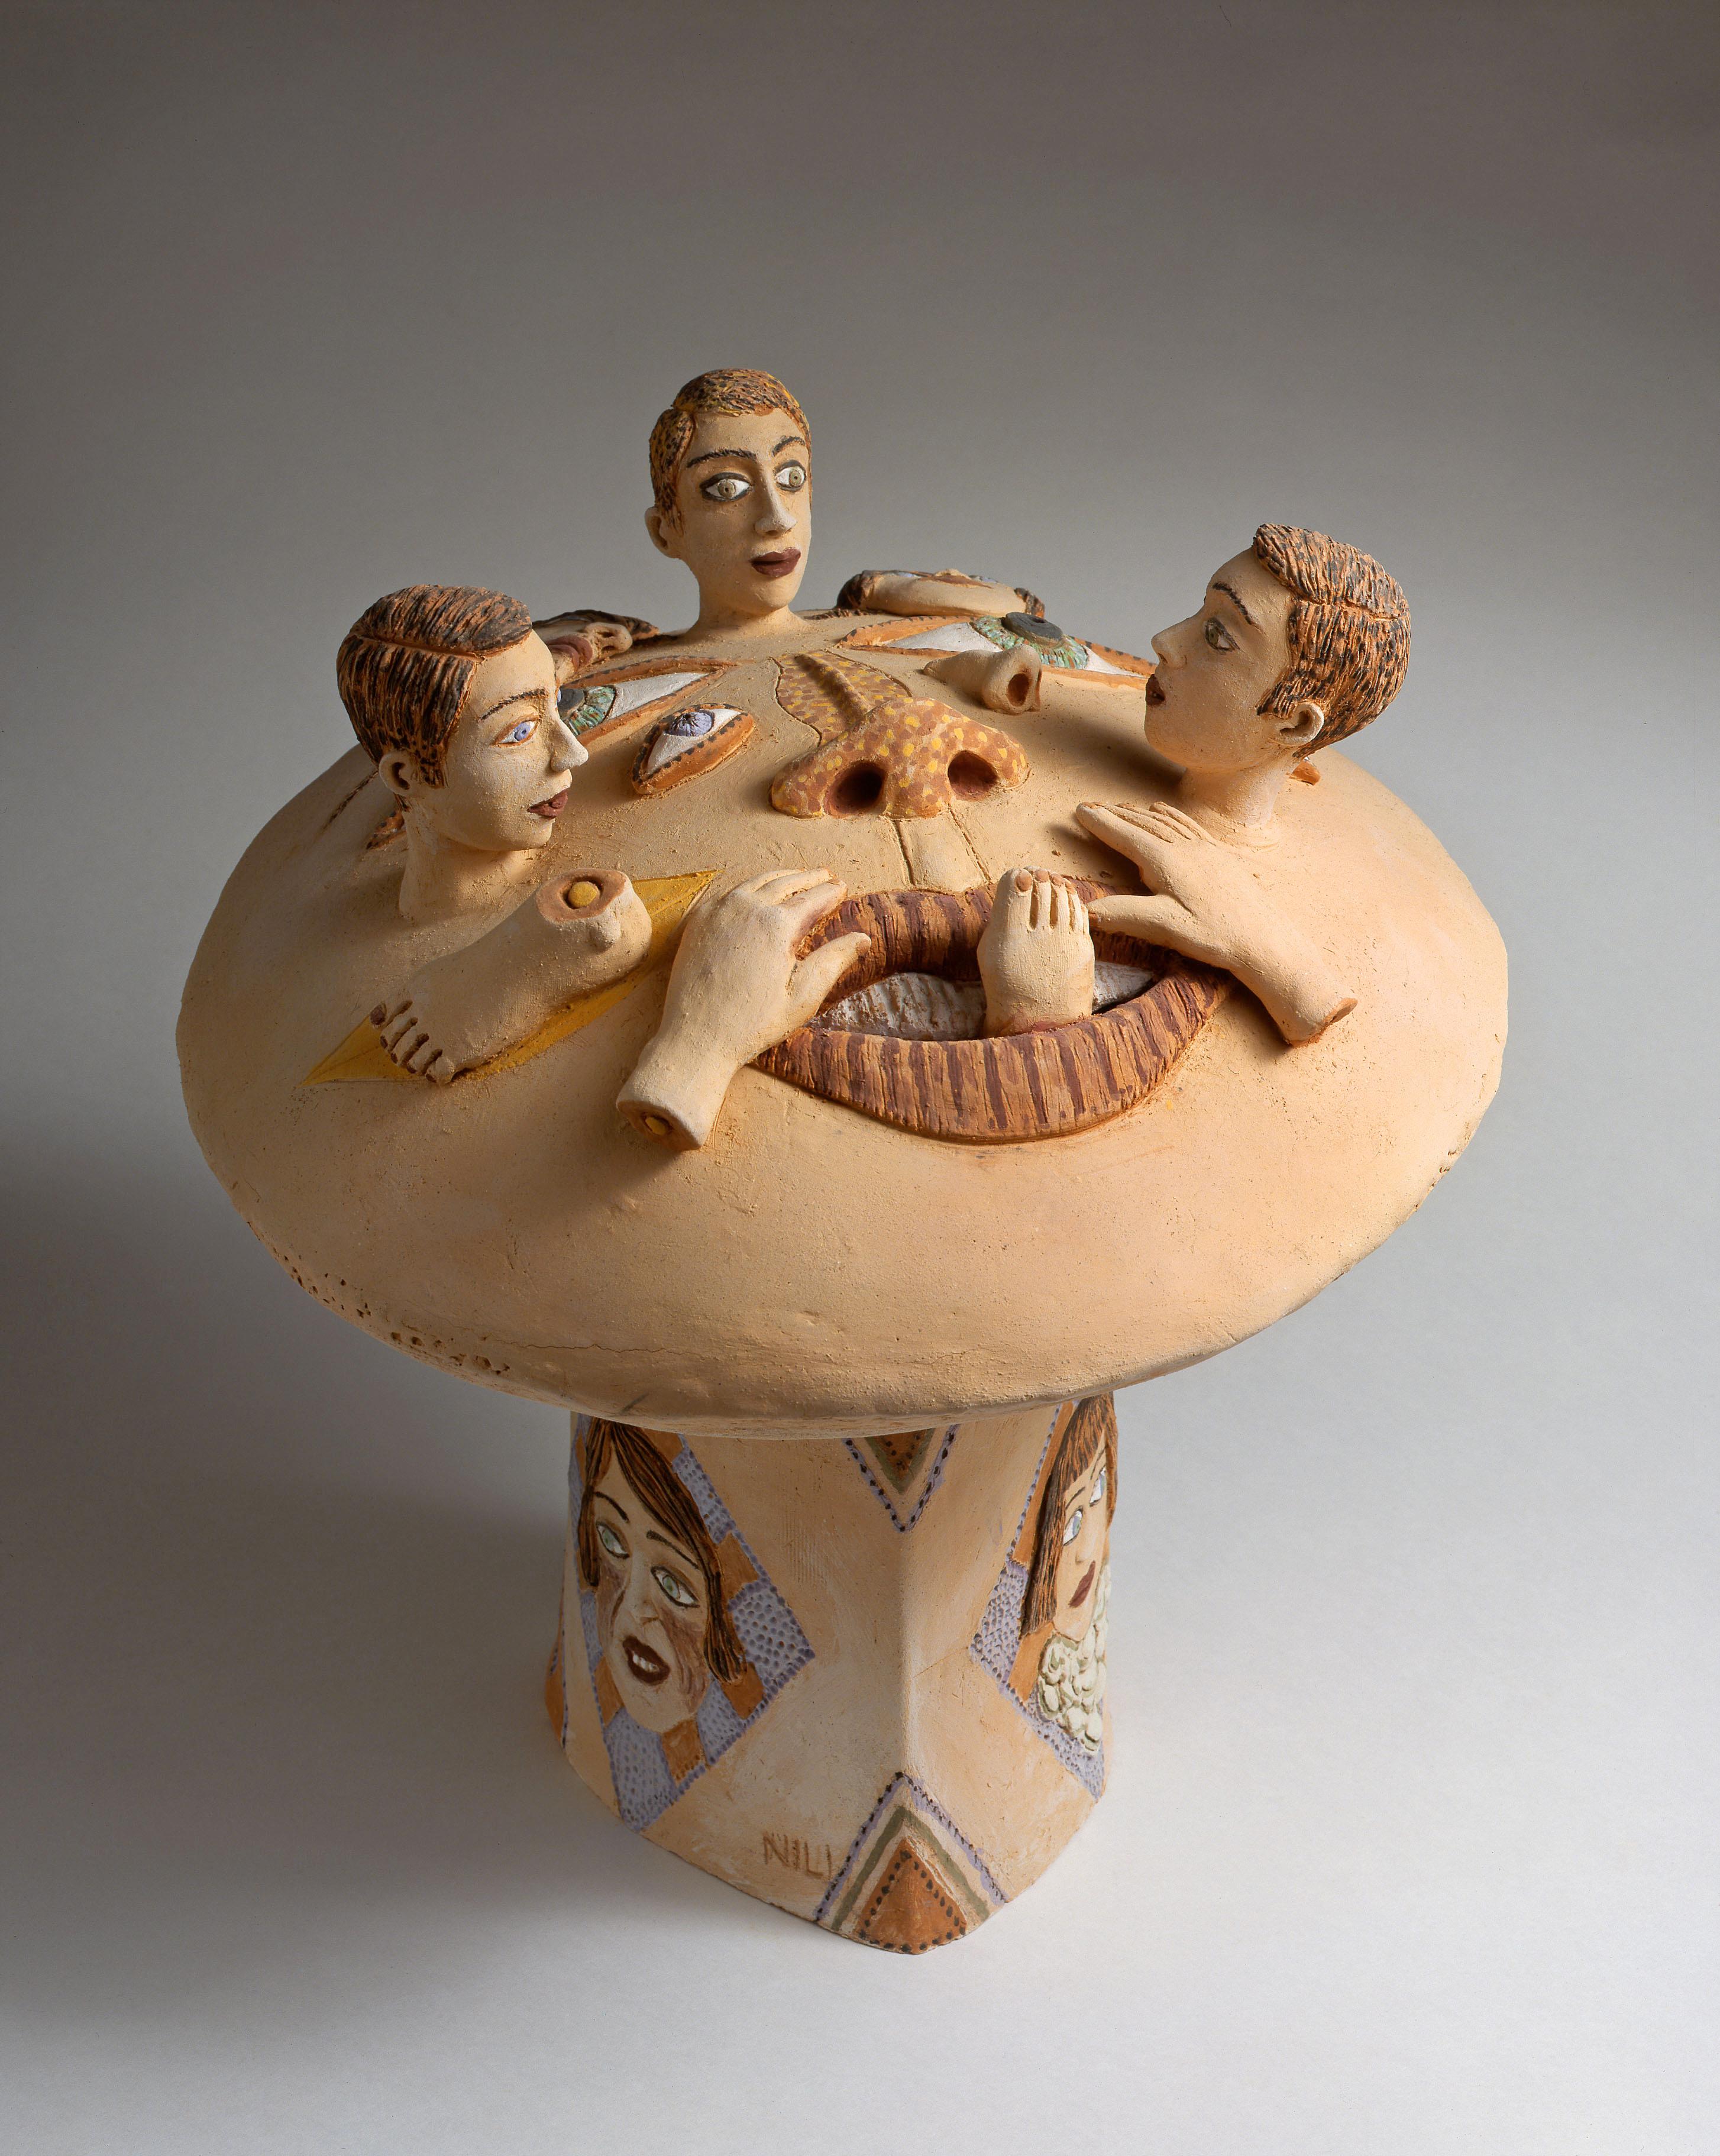 Einzigartige Terrakotta-Skulptur
Vom Künstler handsigniert

Die kontemplativen Kreaturen von Nili Pincas, von extremer Raffinesse, laden zur Stille ein.
Diese Isolierung des geformten Wesens ergreift und beruhigt, während sie gleichzeitig Fragen